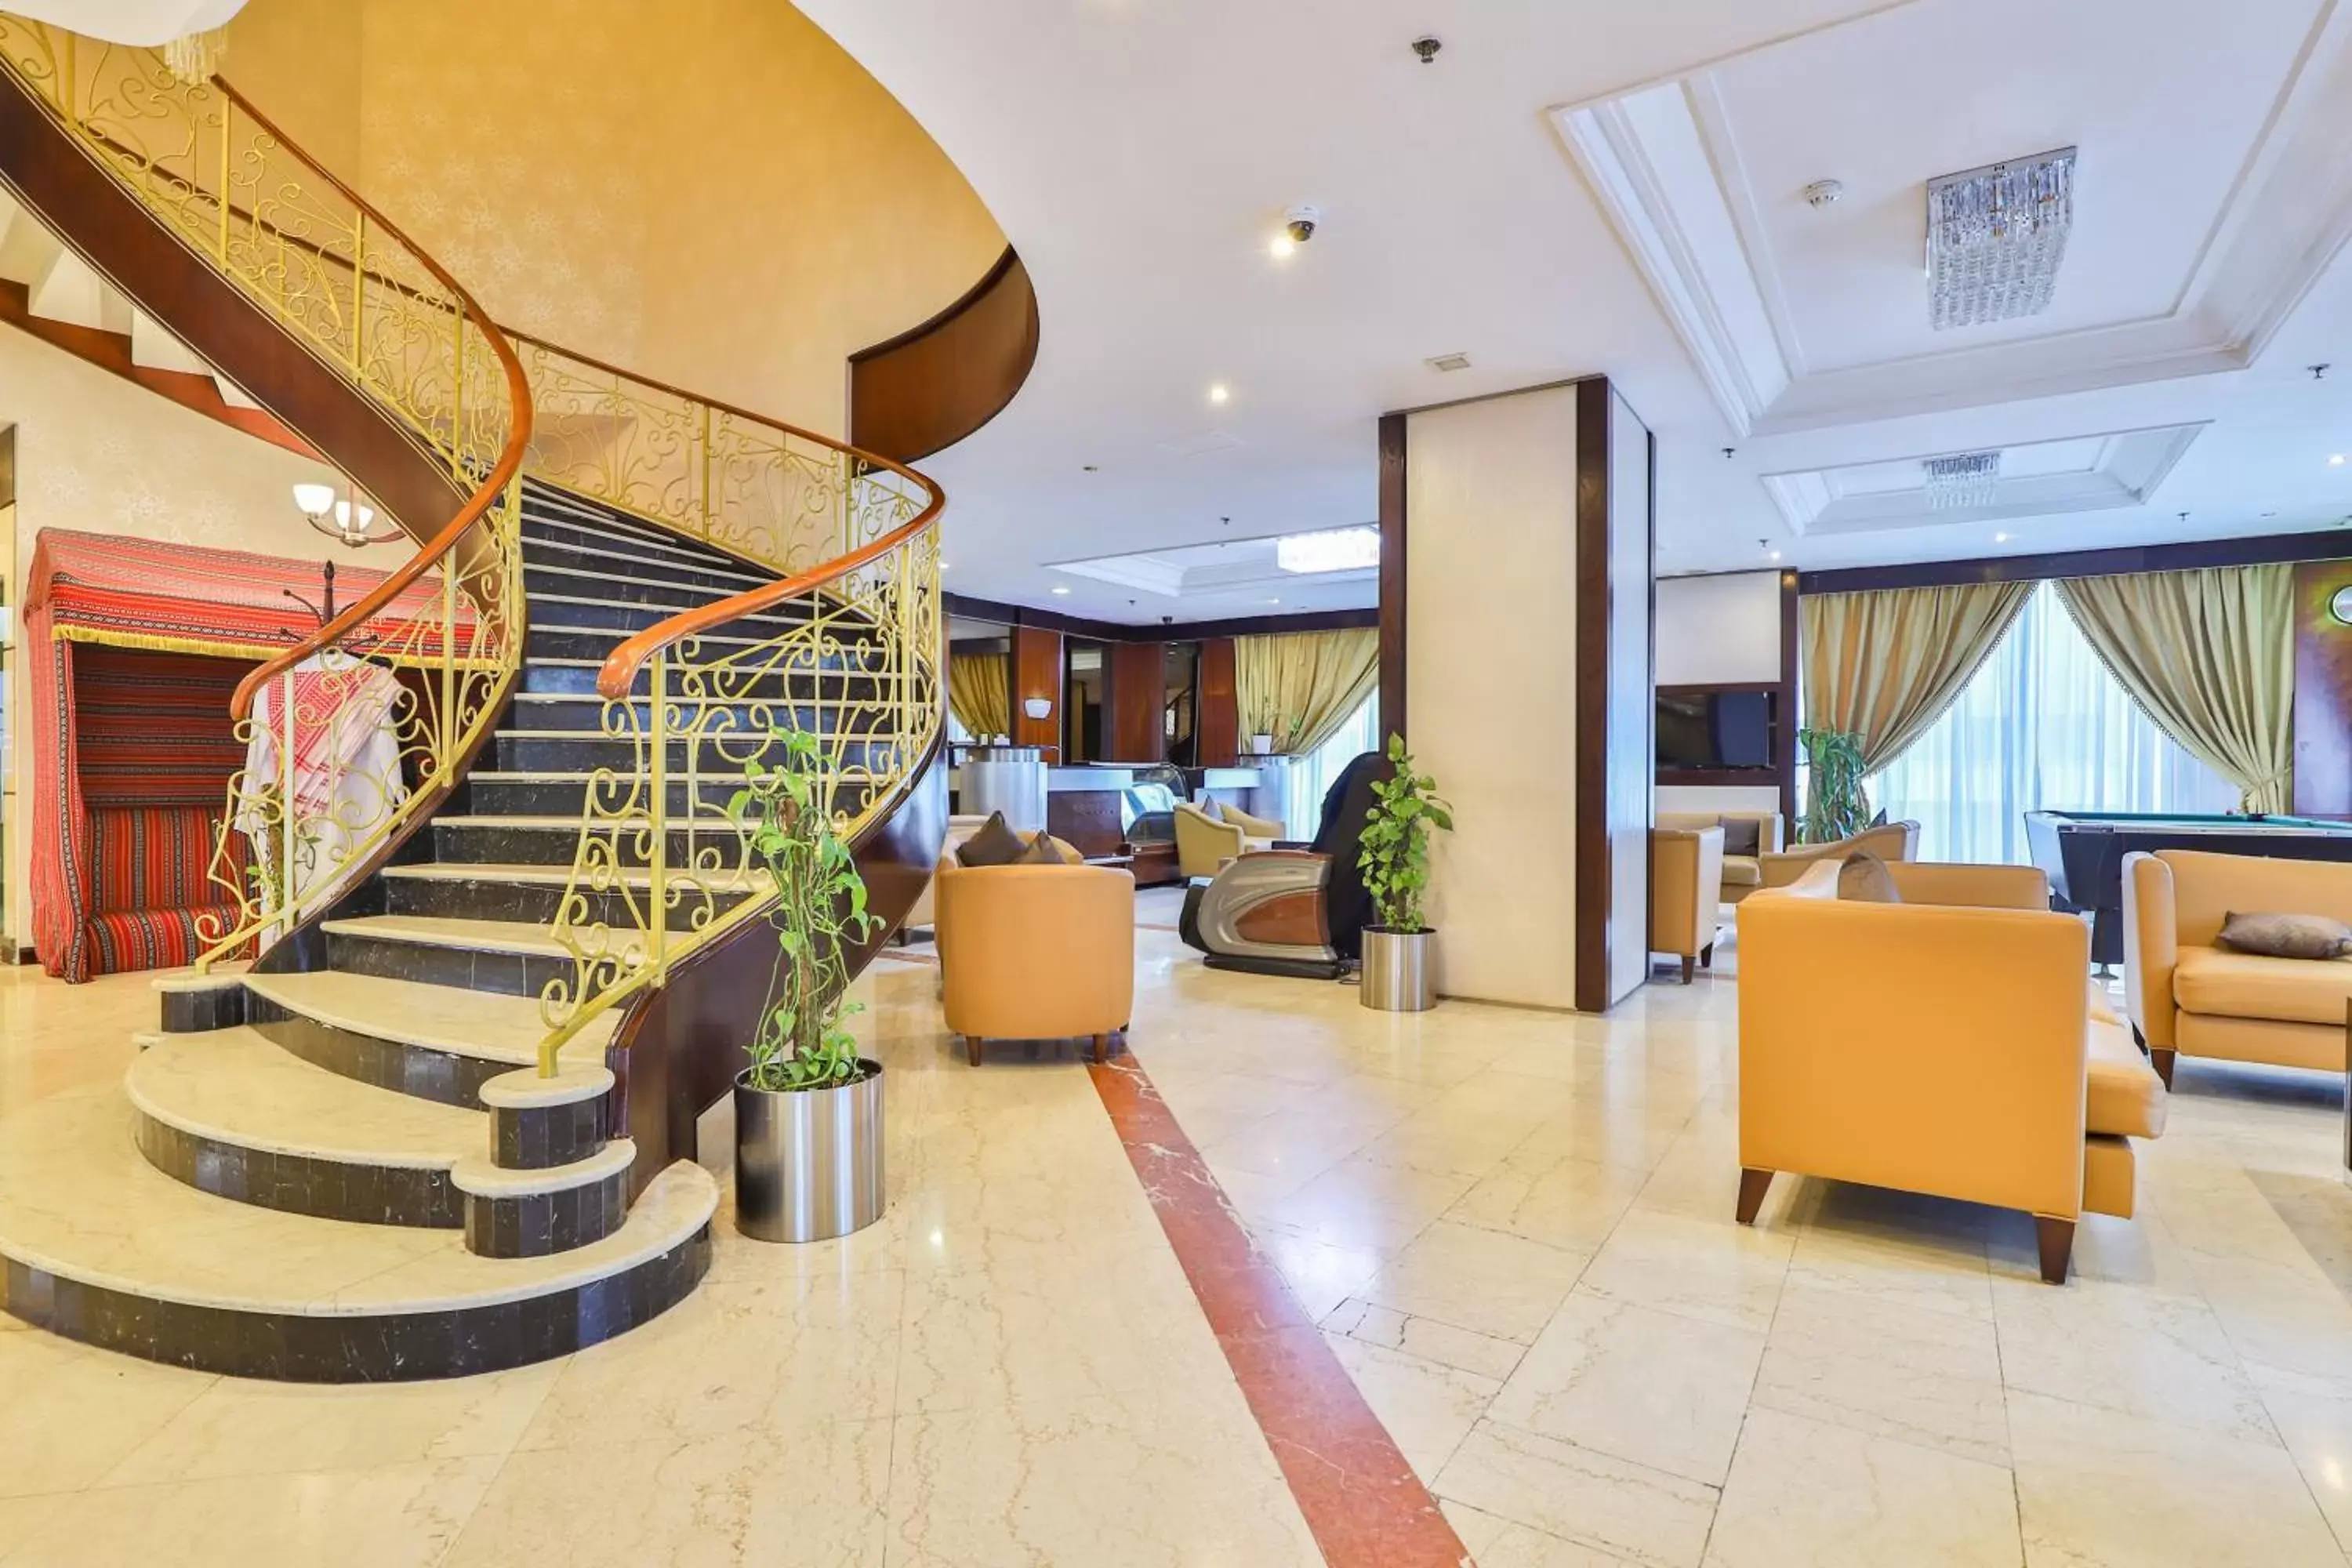 Lobby or reception, Lobby/Reception in Landmark Summit Hotel